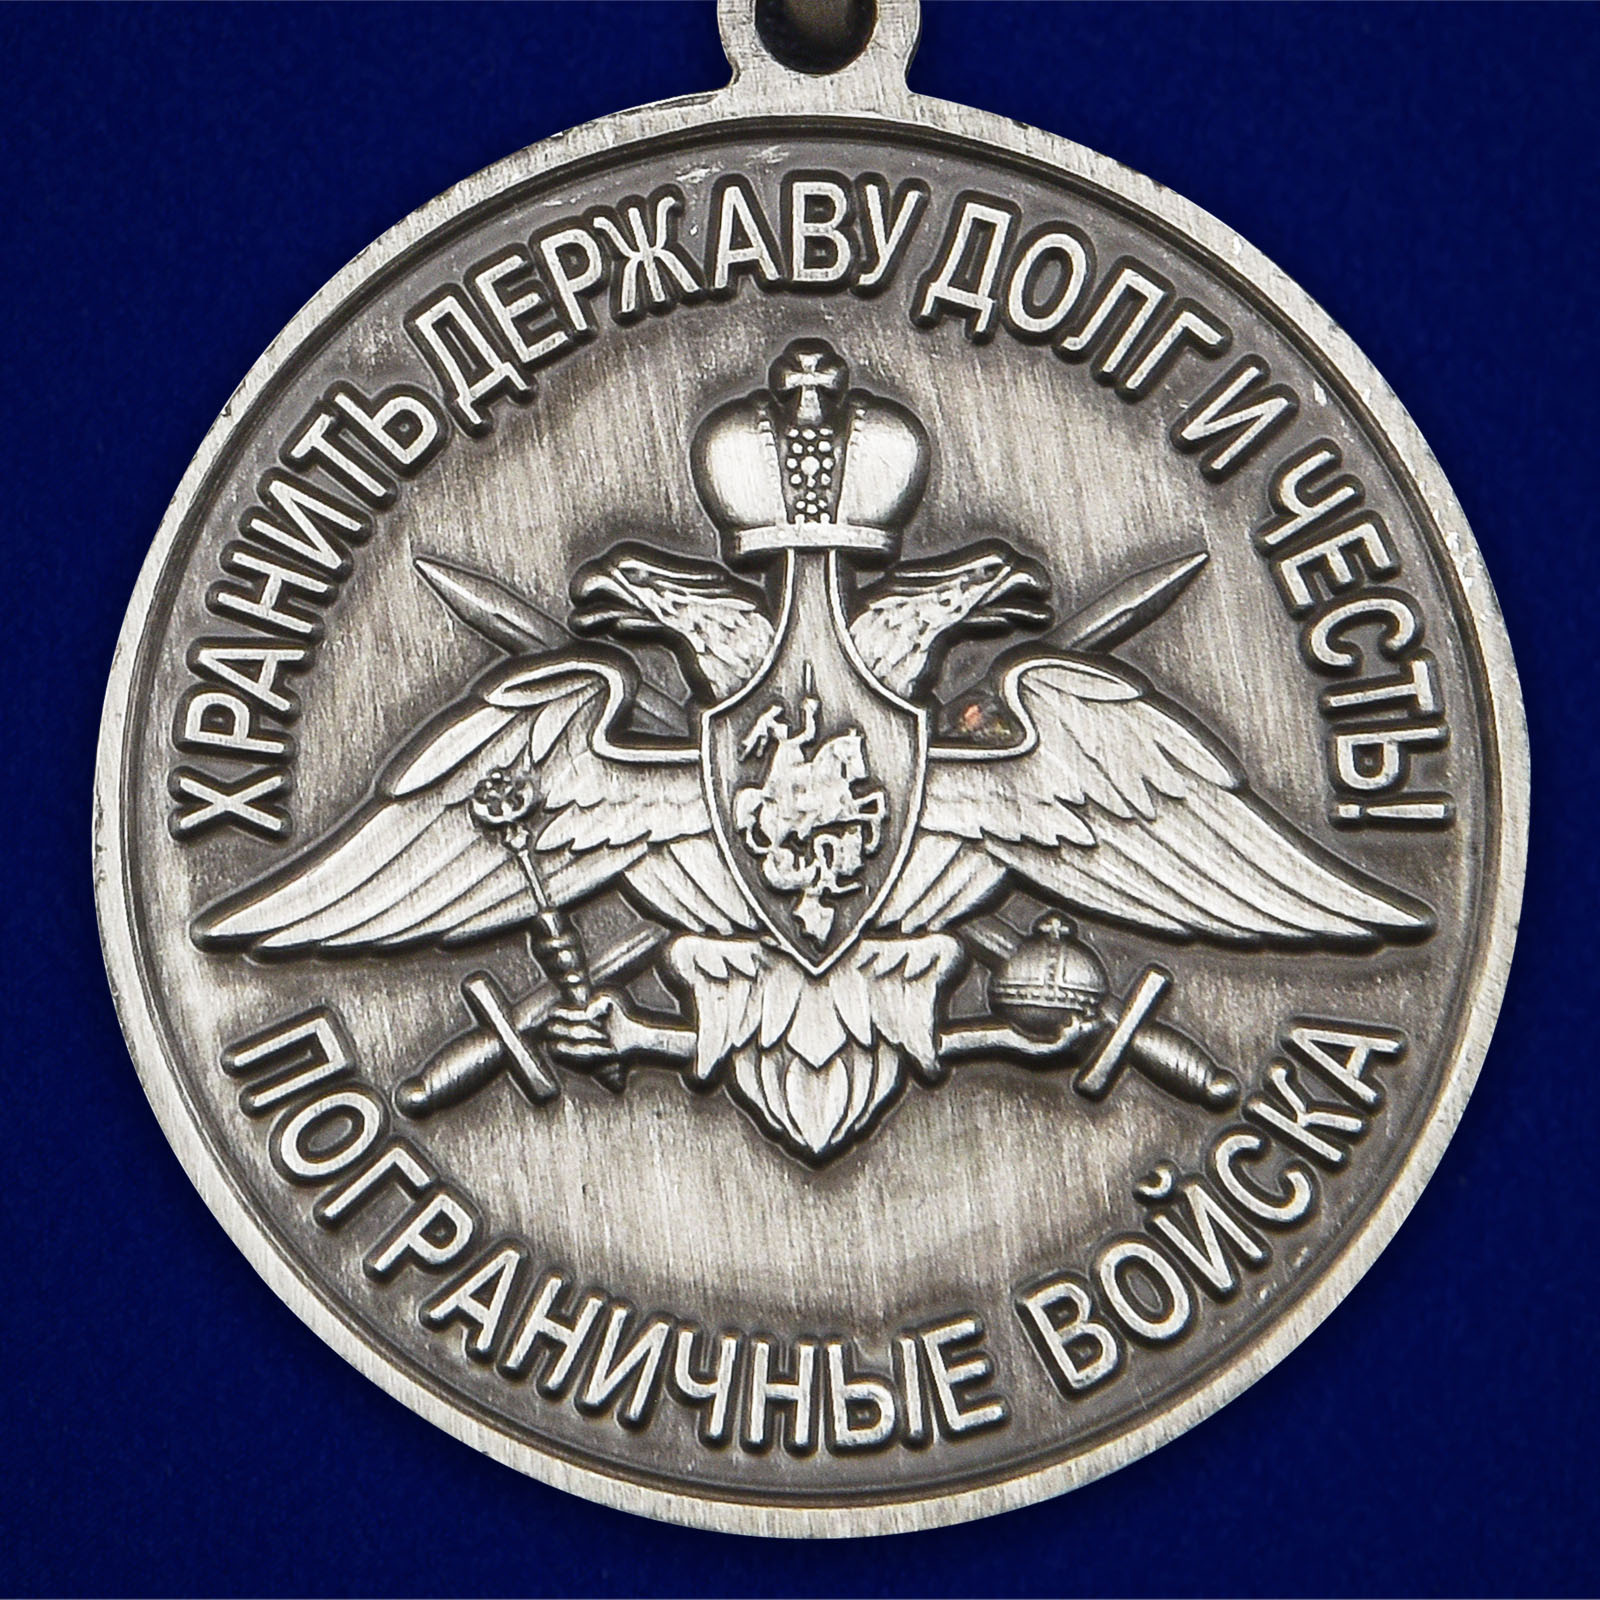 Медаль "За службу в Сортавальском пограничном отряде" 